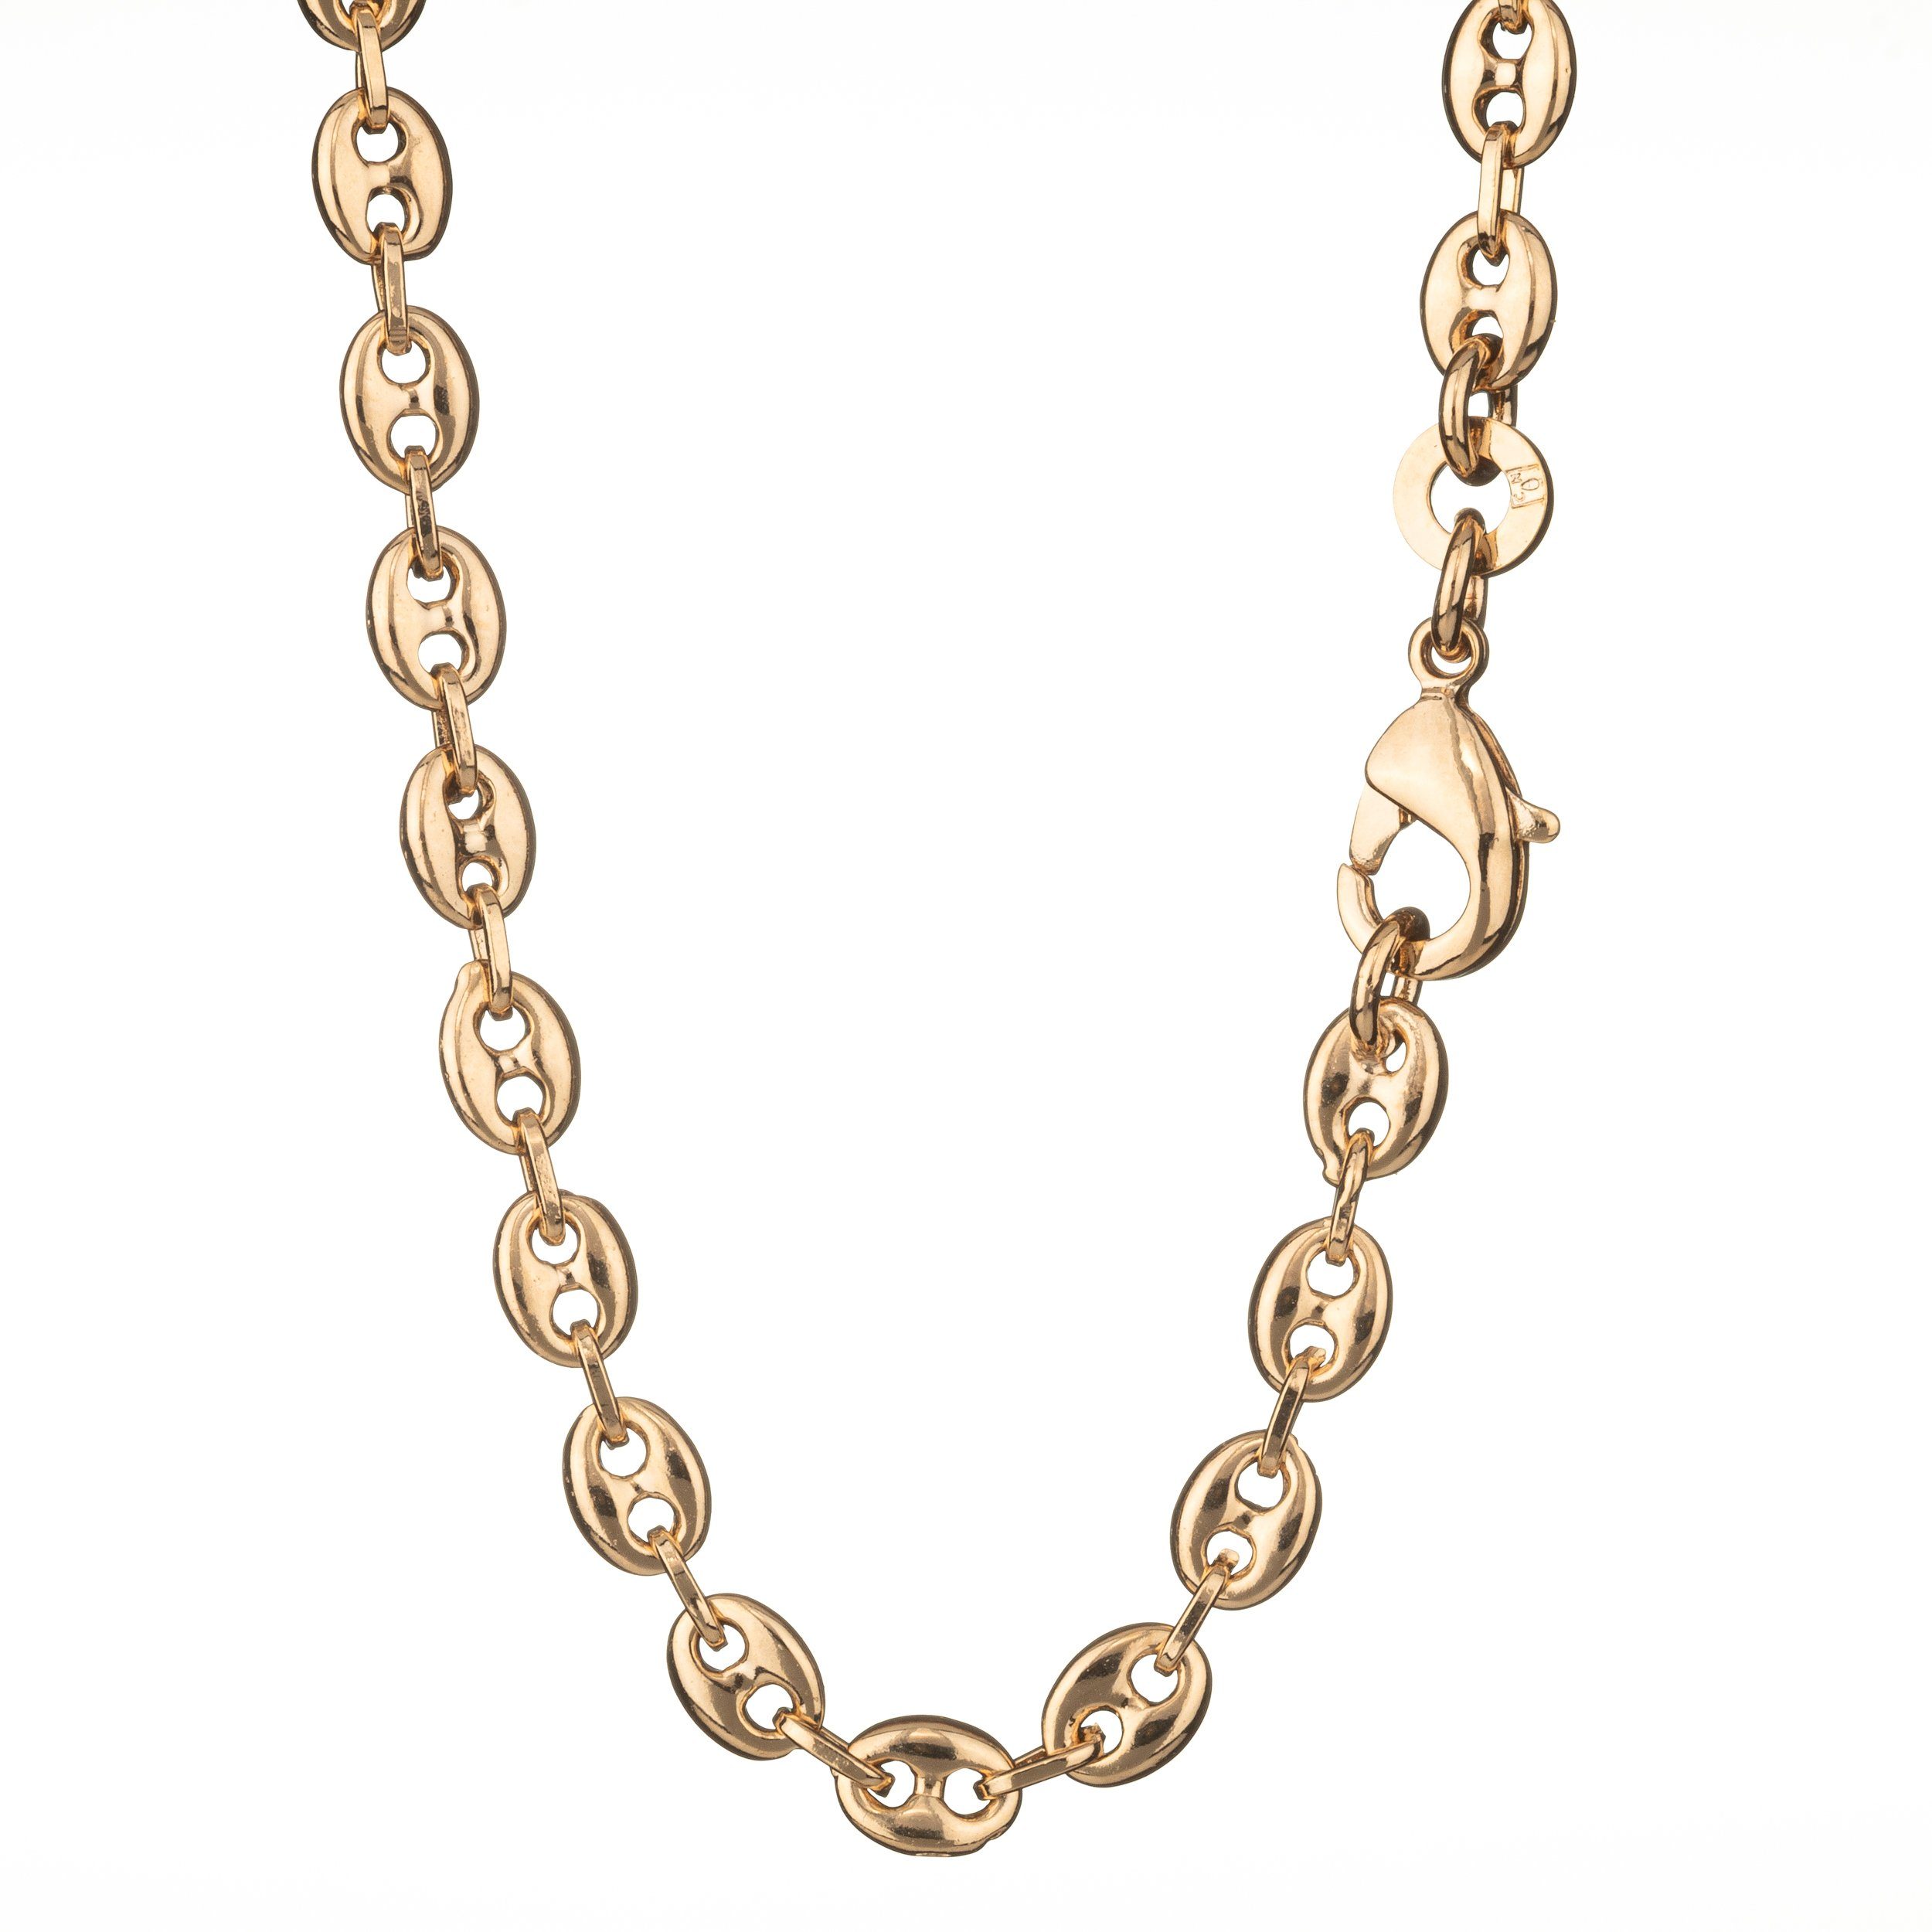 Goldene Männer Halsketten online kaufen | OTTO